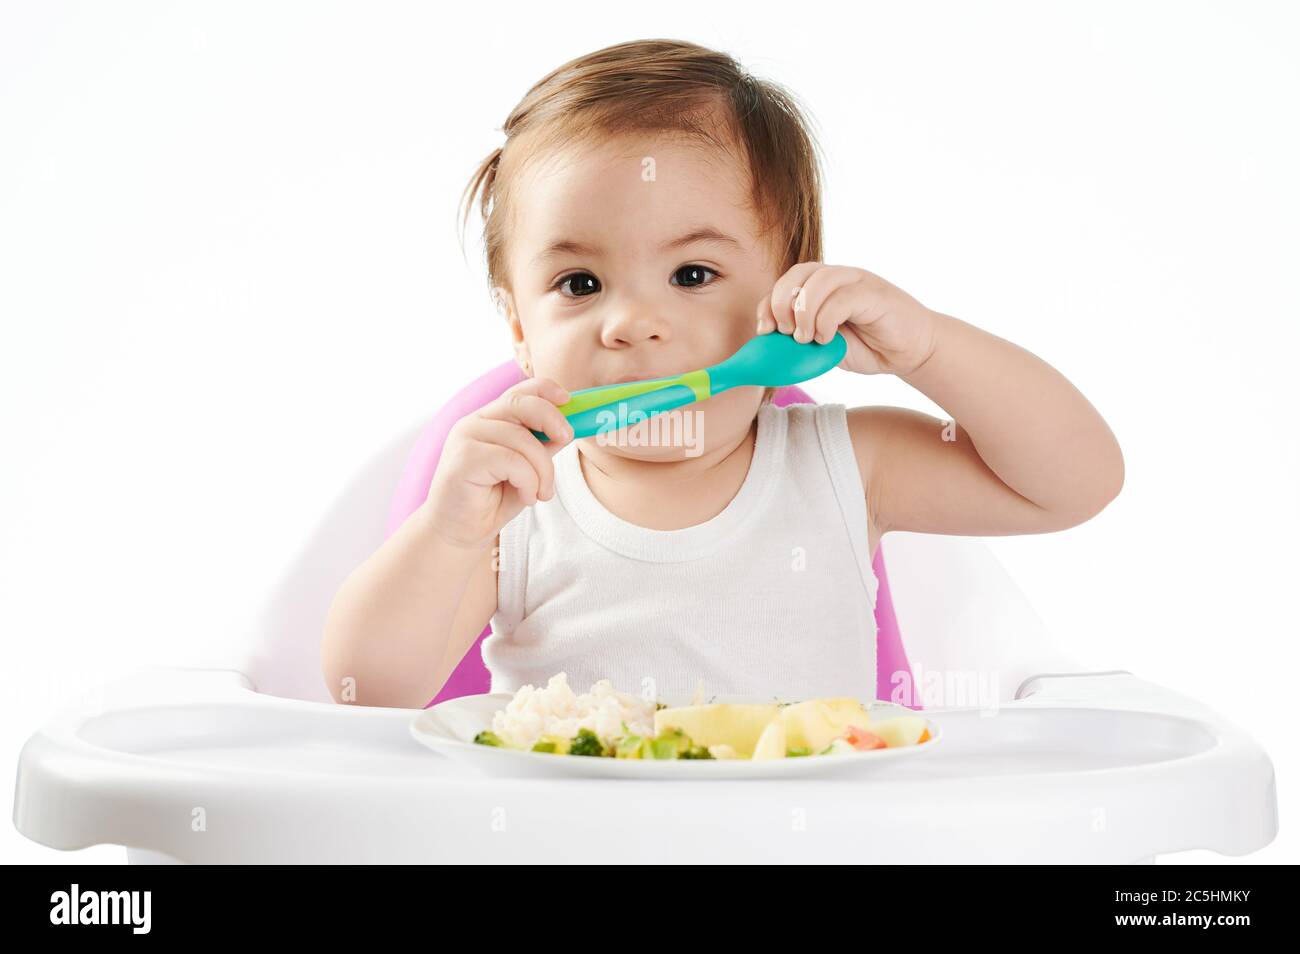 Jolie petite fille avec cuillère devant l'assiette avec nourriture Banque D'Images